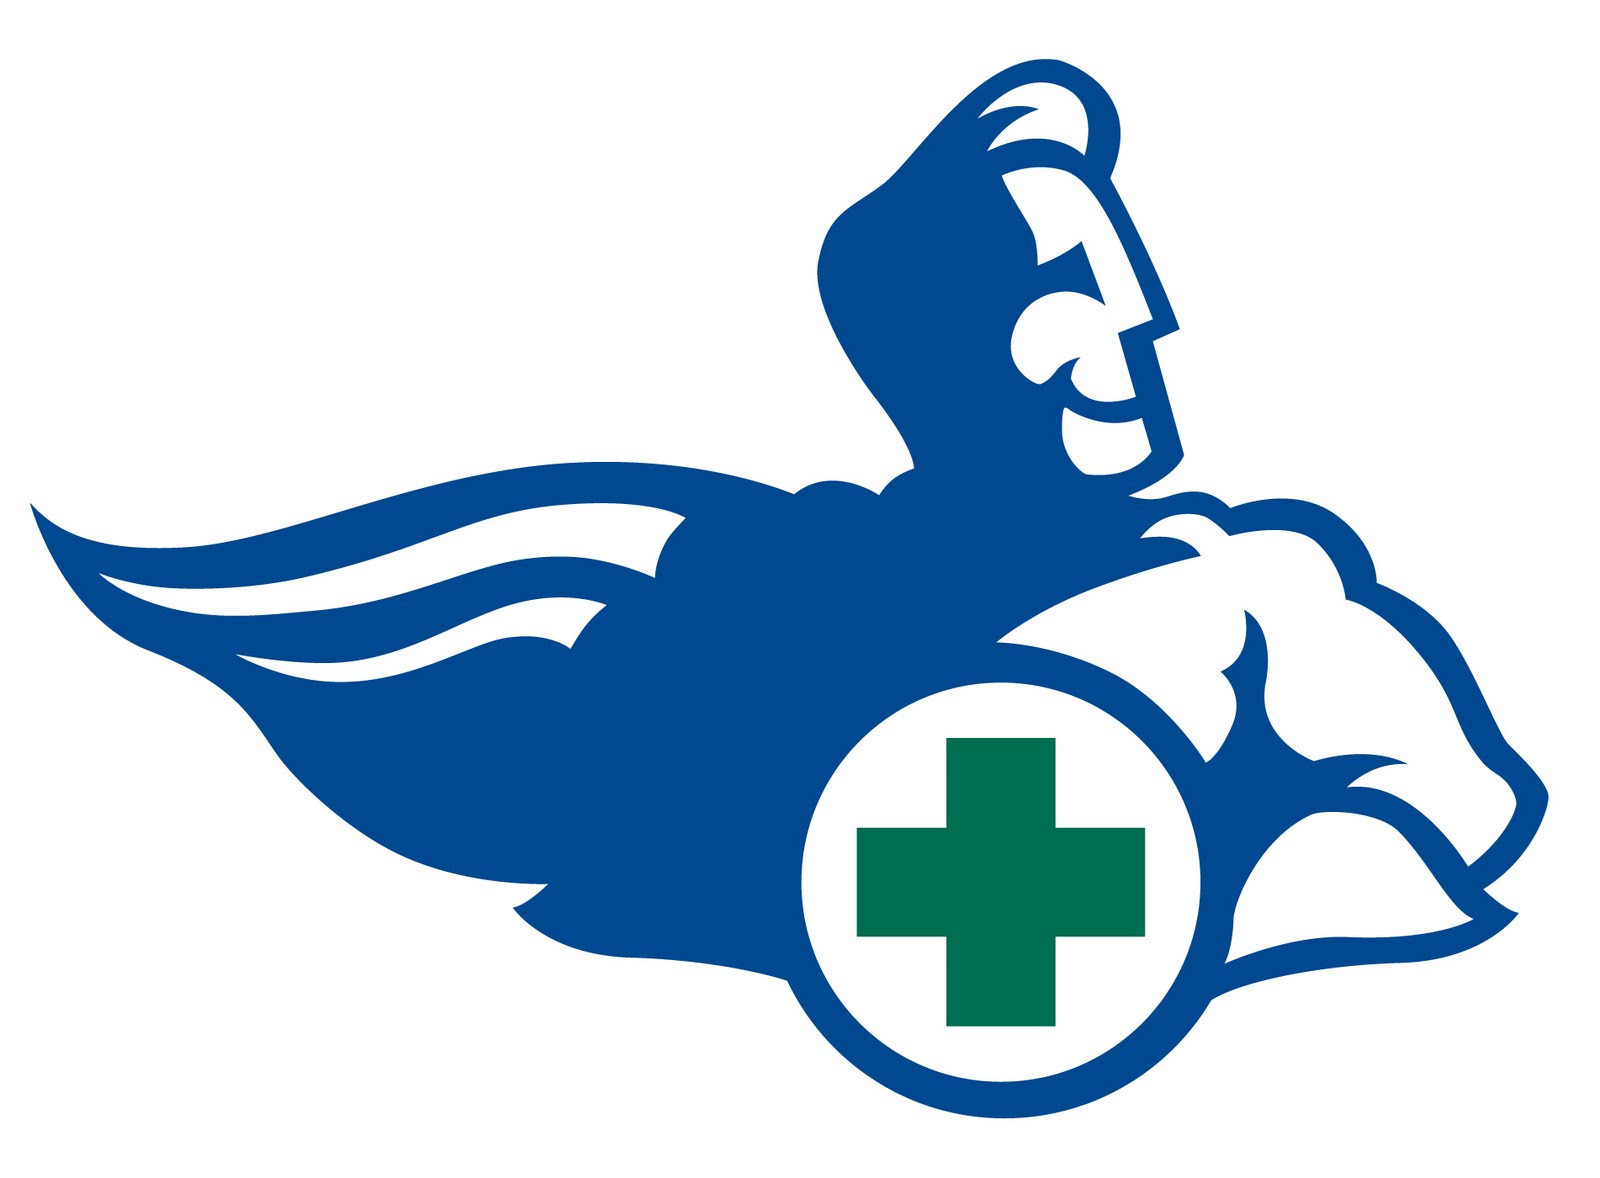 Tara Hale Illustration: Medical supplies delivery logo